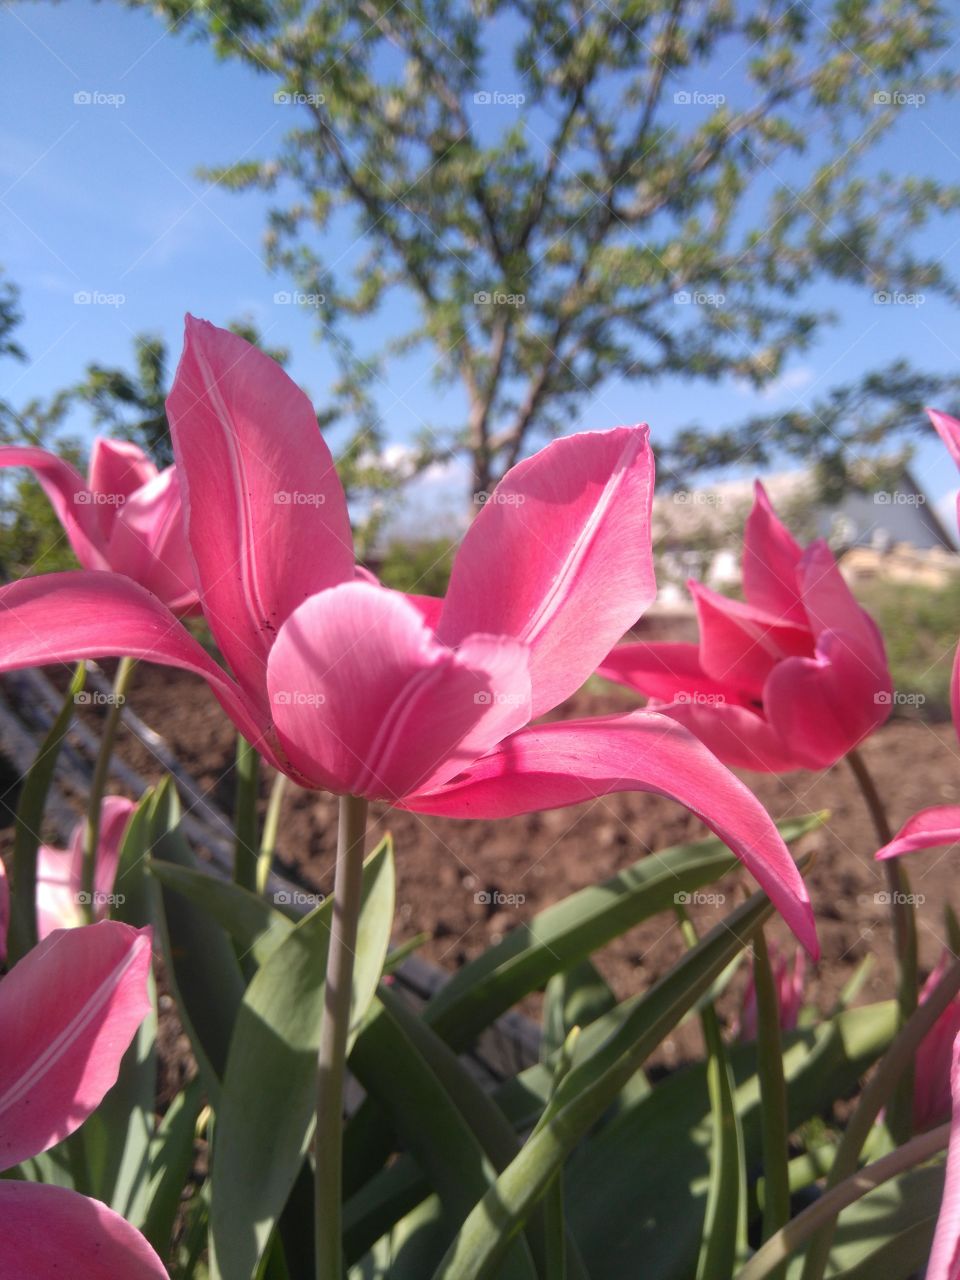 Солнечно в саду, тюльпаны